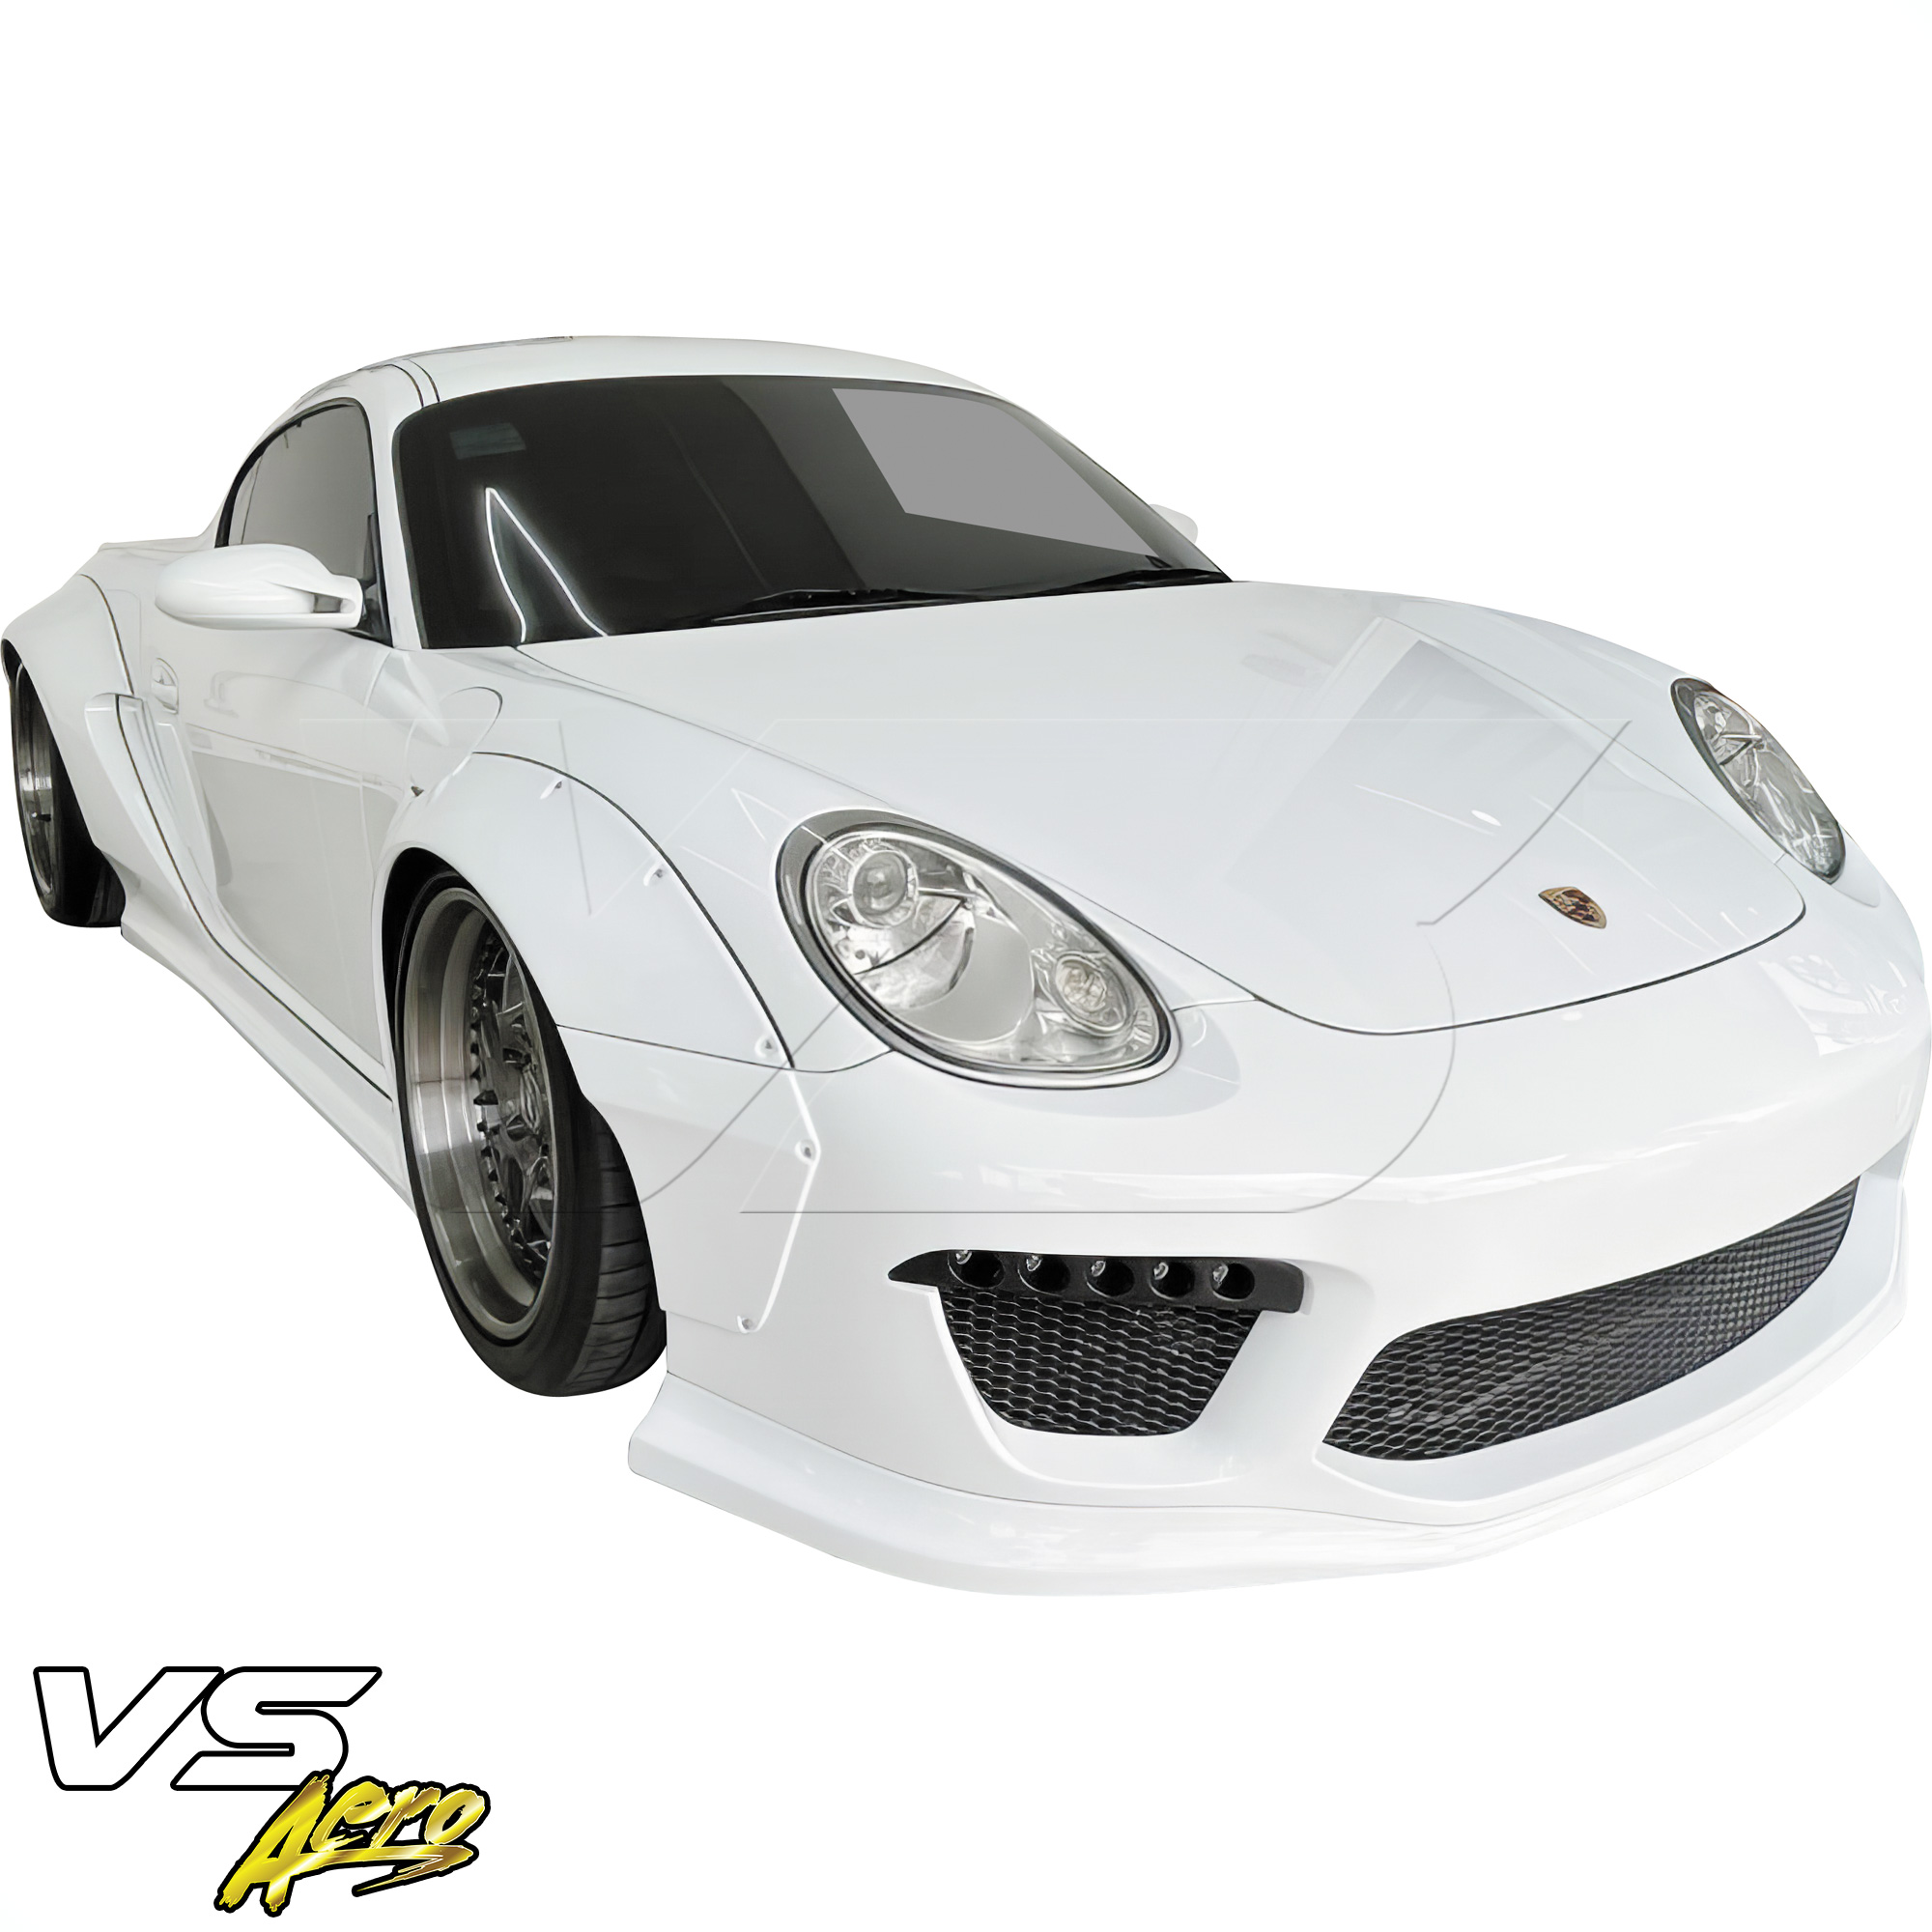 VSaero FRP TKYO v2 Wide Body Front Bumper 3pc > Porsche Cayman 987 2006-2008 - Image 17